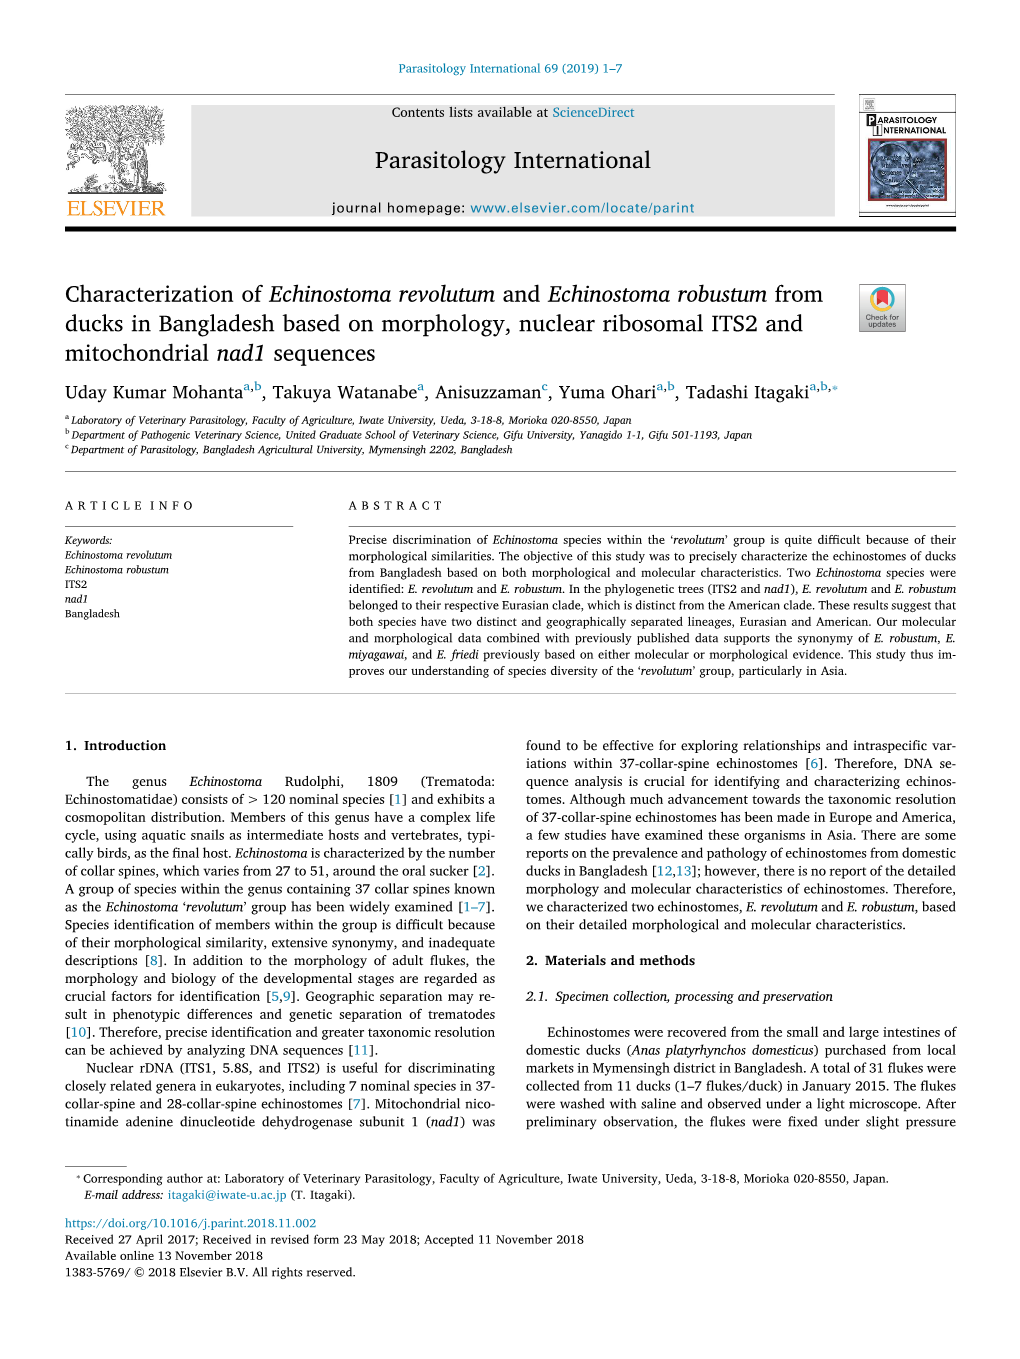 Characterization of Echinostoma Revolutum and Echinostoma